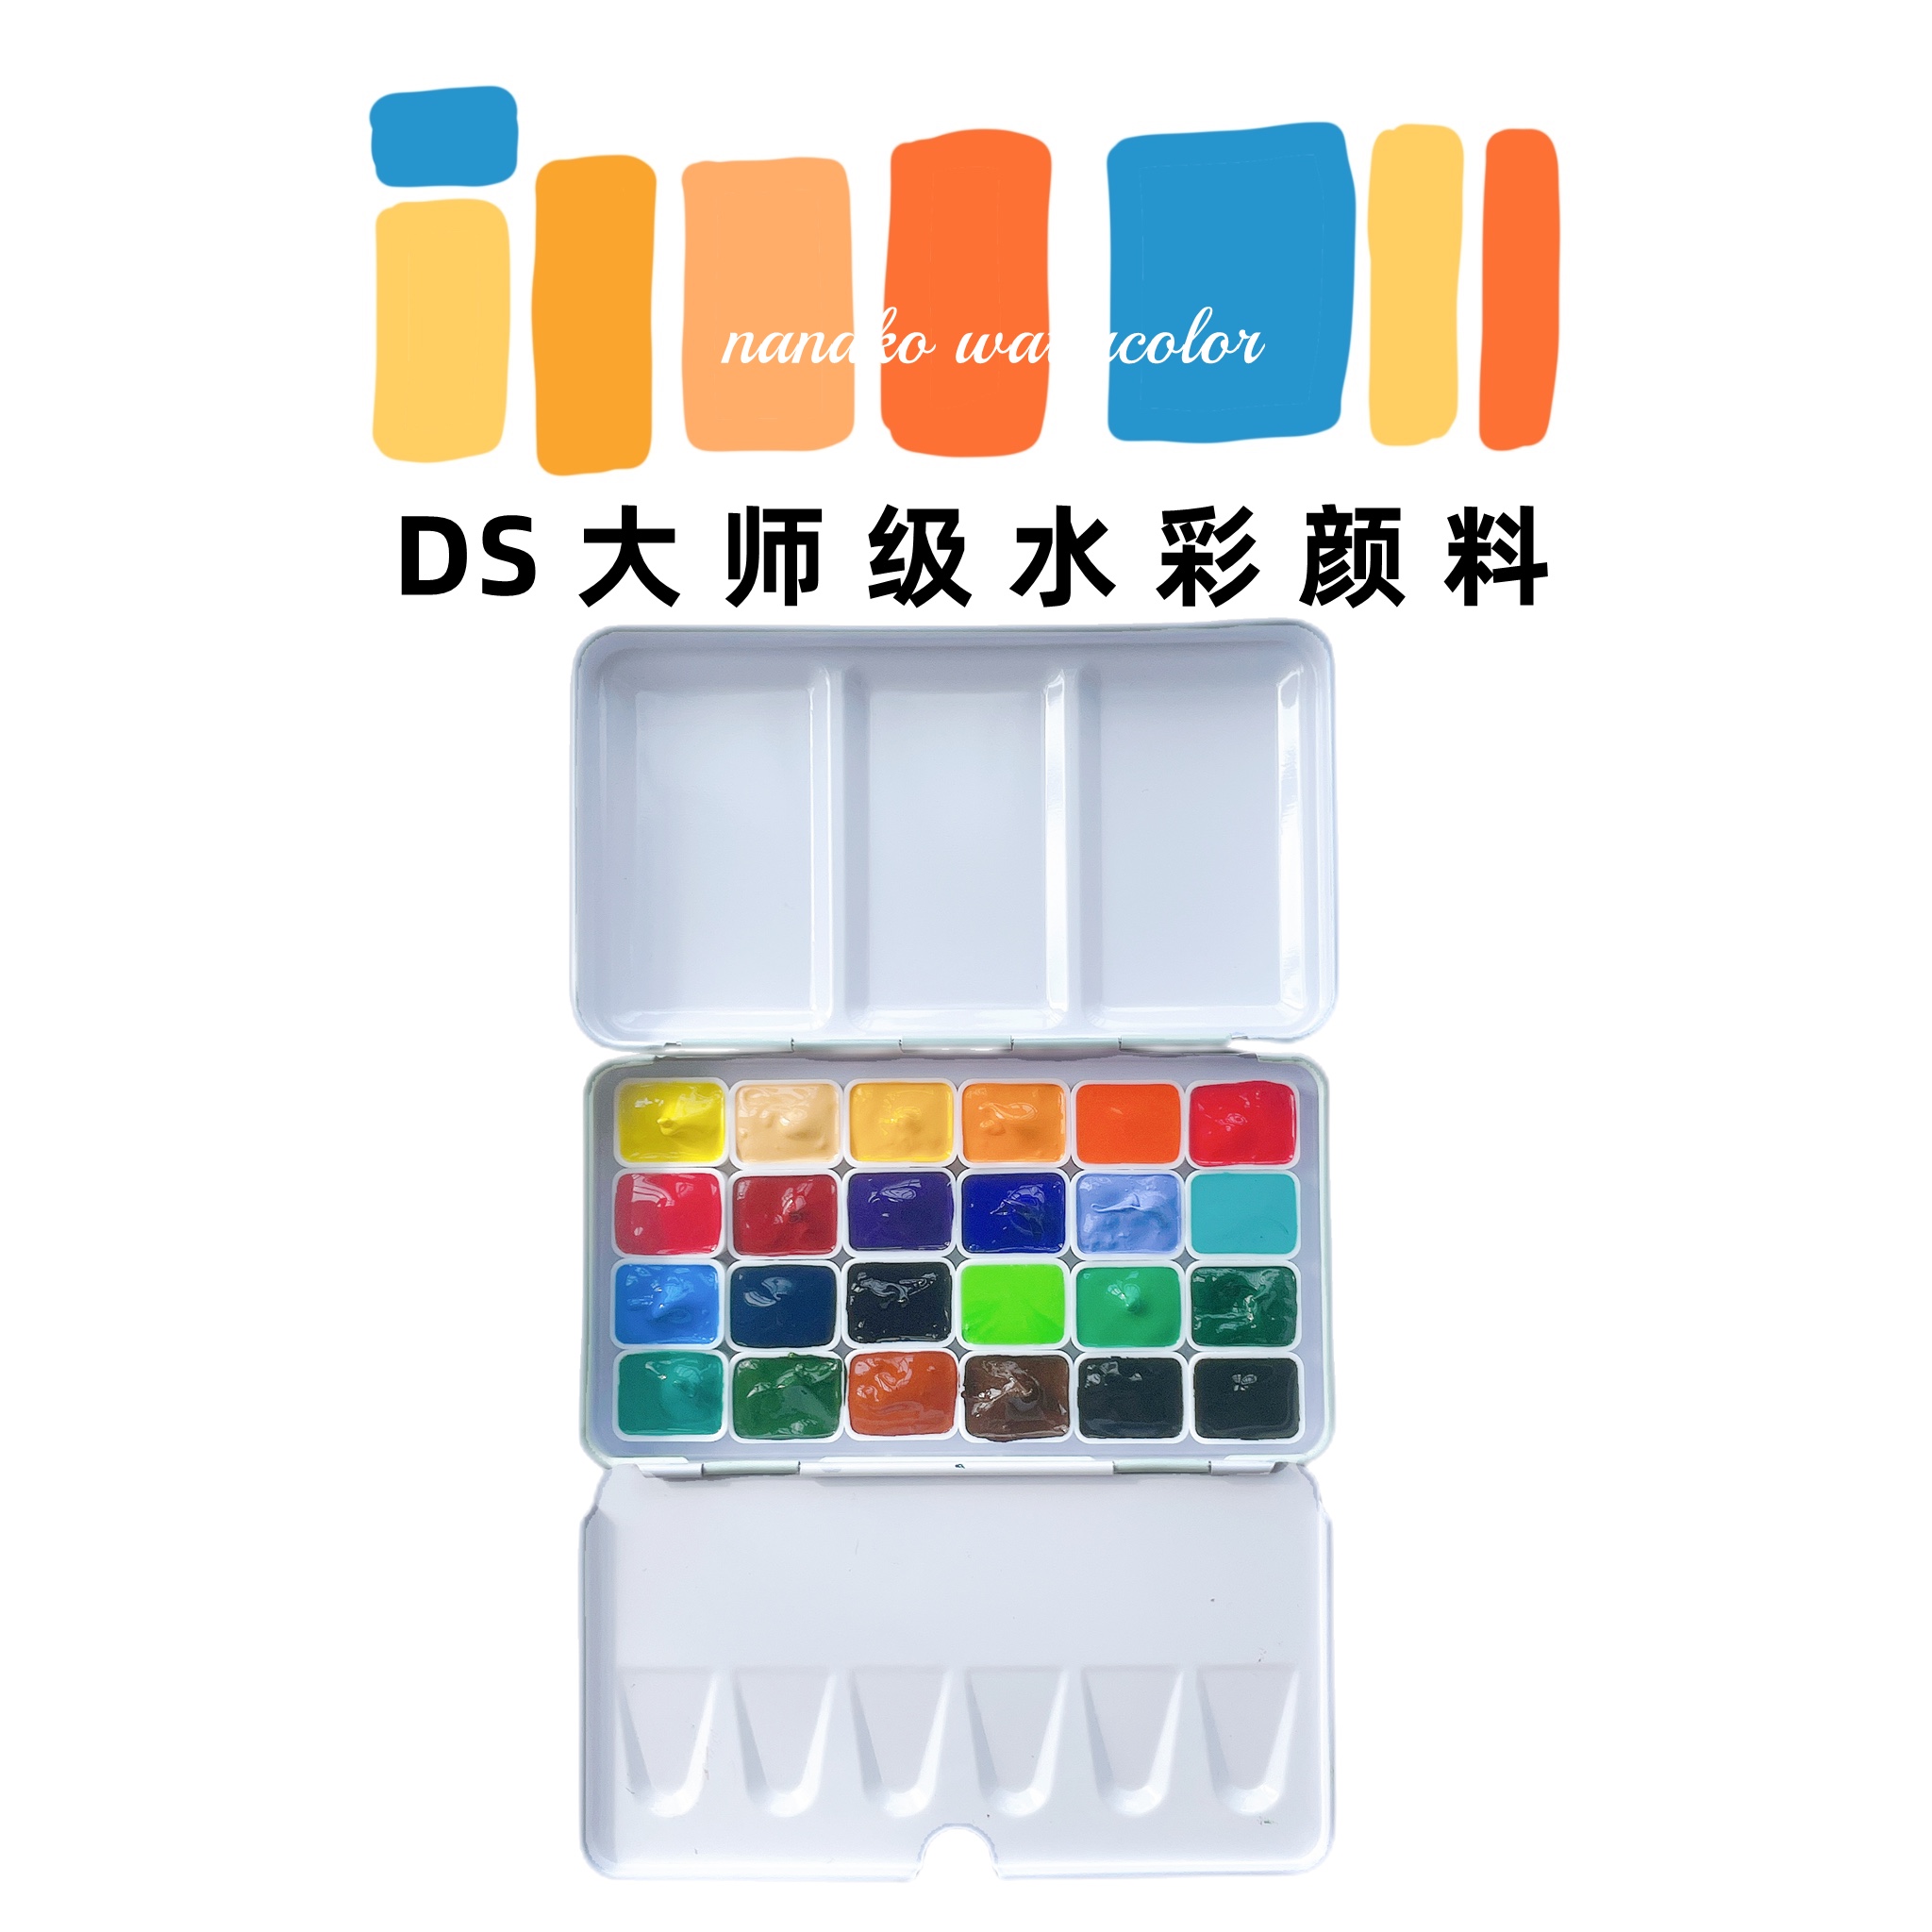 Ds大师级艺术家基础官配24色水彩颜料分装送三折铁盒新手试色